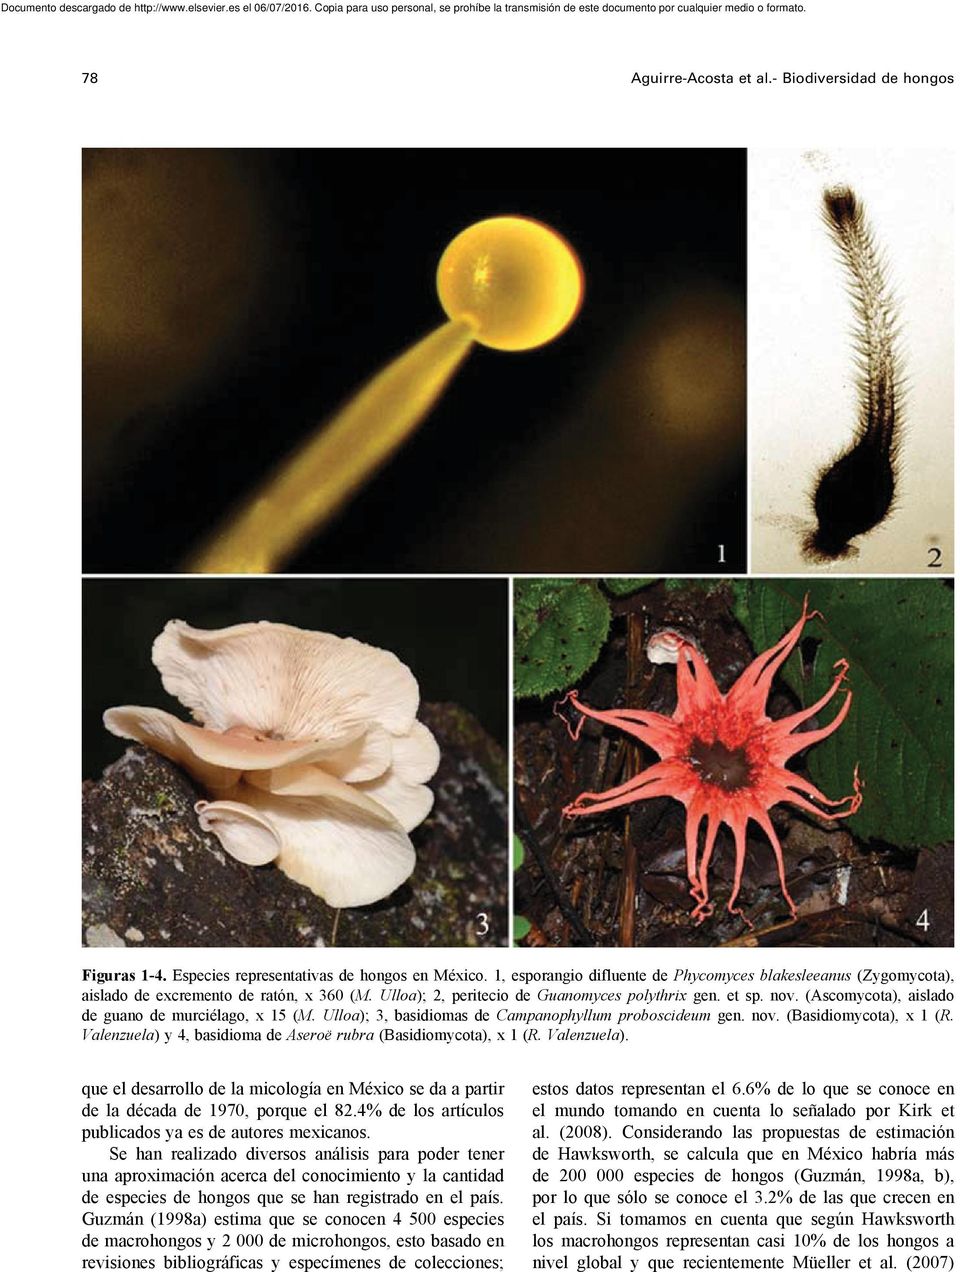 (Ascomycota), aislado de guano de murciélago, x 15 (M. Ulloa); 3, basidiomas de Campanophyllum proboscideum gen. nov. (Basidiomycota), x 1 (R.